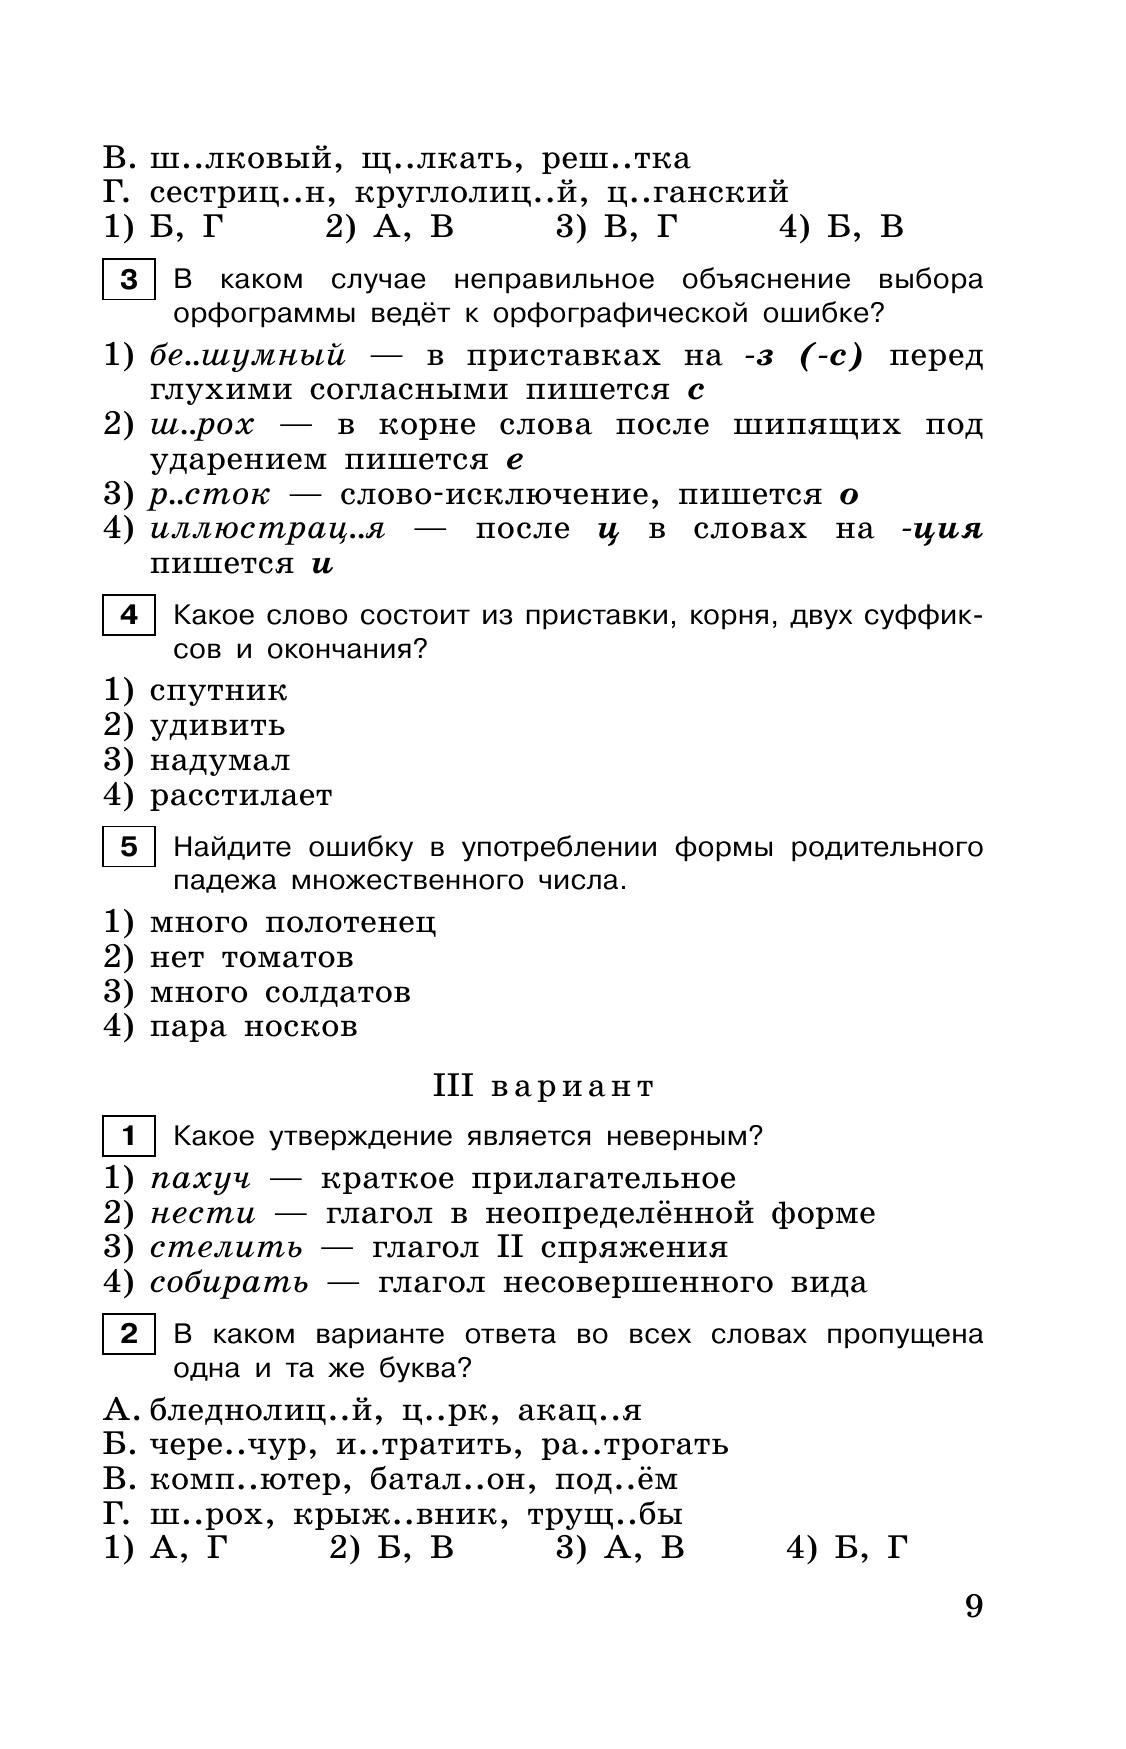 Тестовые задания по русскому языку. 6 класс 4